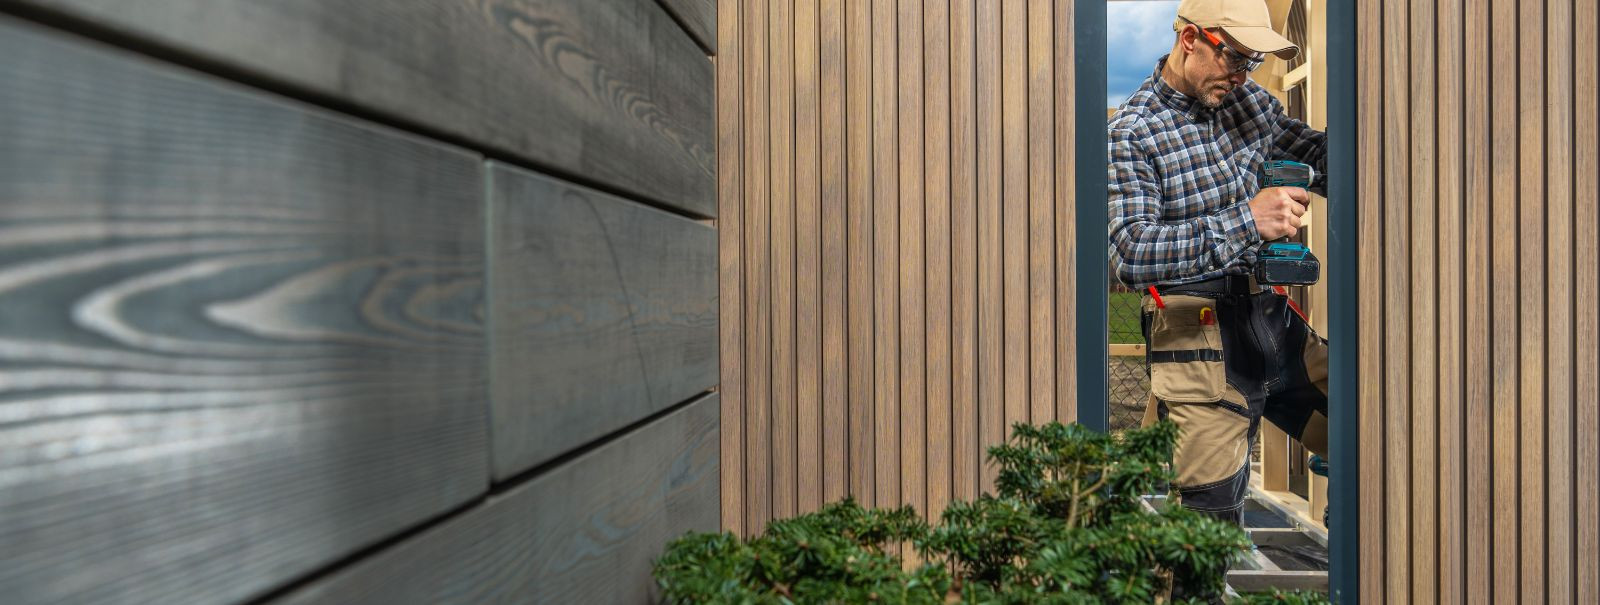 Puidust fassaadid, tuntud ka kui puitvooder, hõlmavad puidumaterjalide kasutamist hoone välispinnal, et kaitsta seda elementide eest ja pakkuda esteetilist ilme